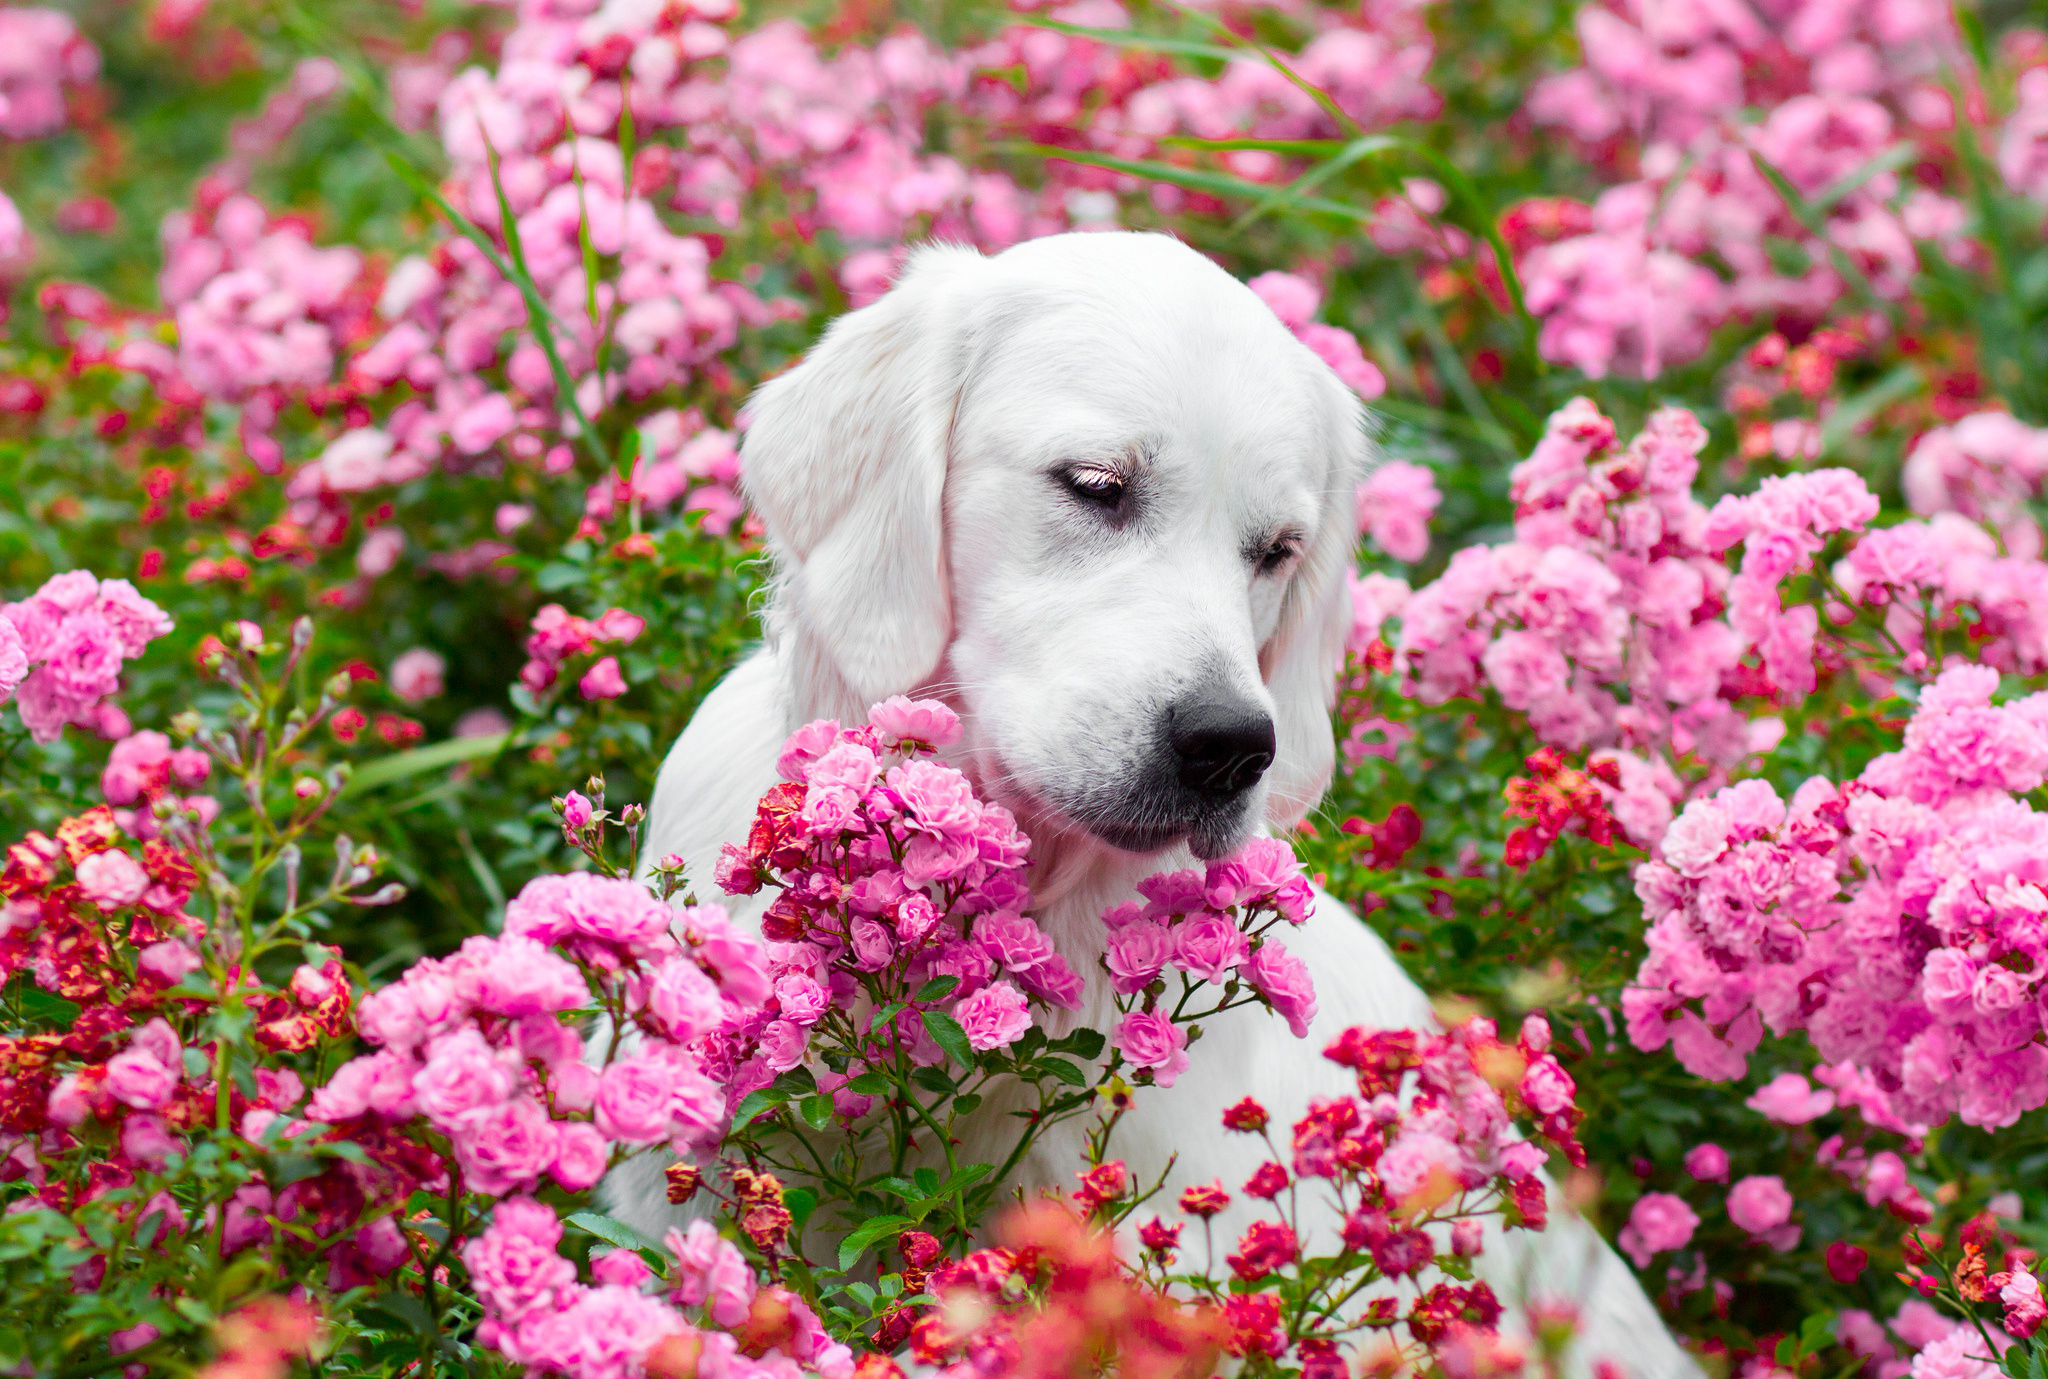 猎犬在粉红色的花朵中